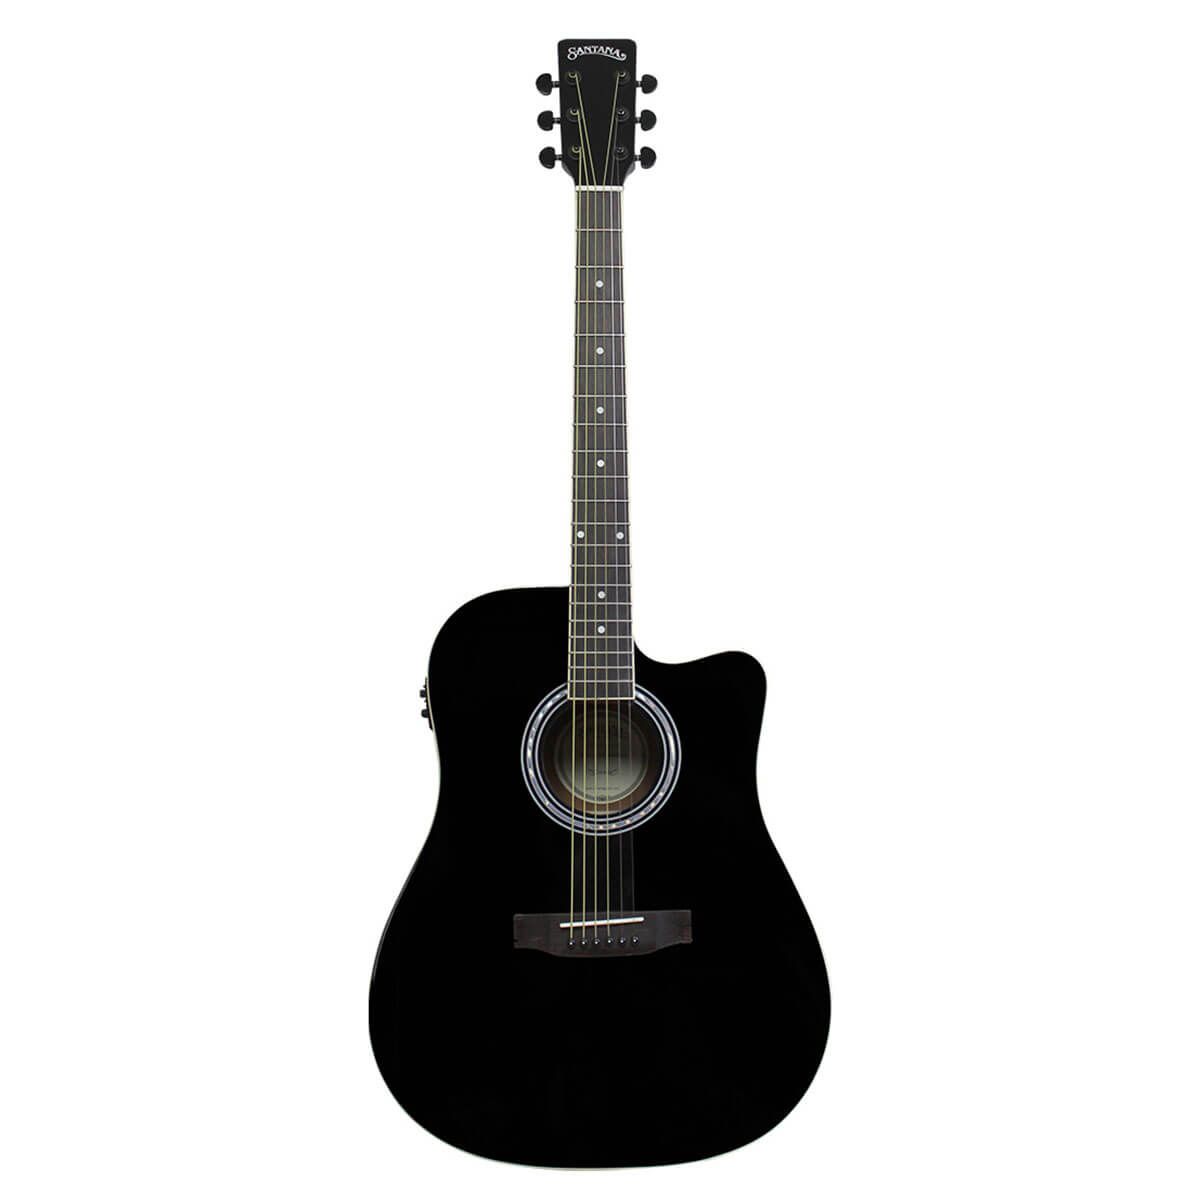 Køb Santana LA-100EQCW-BK v2 Western guitar - Sort - Pris 2295.00 kr.